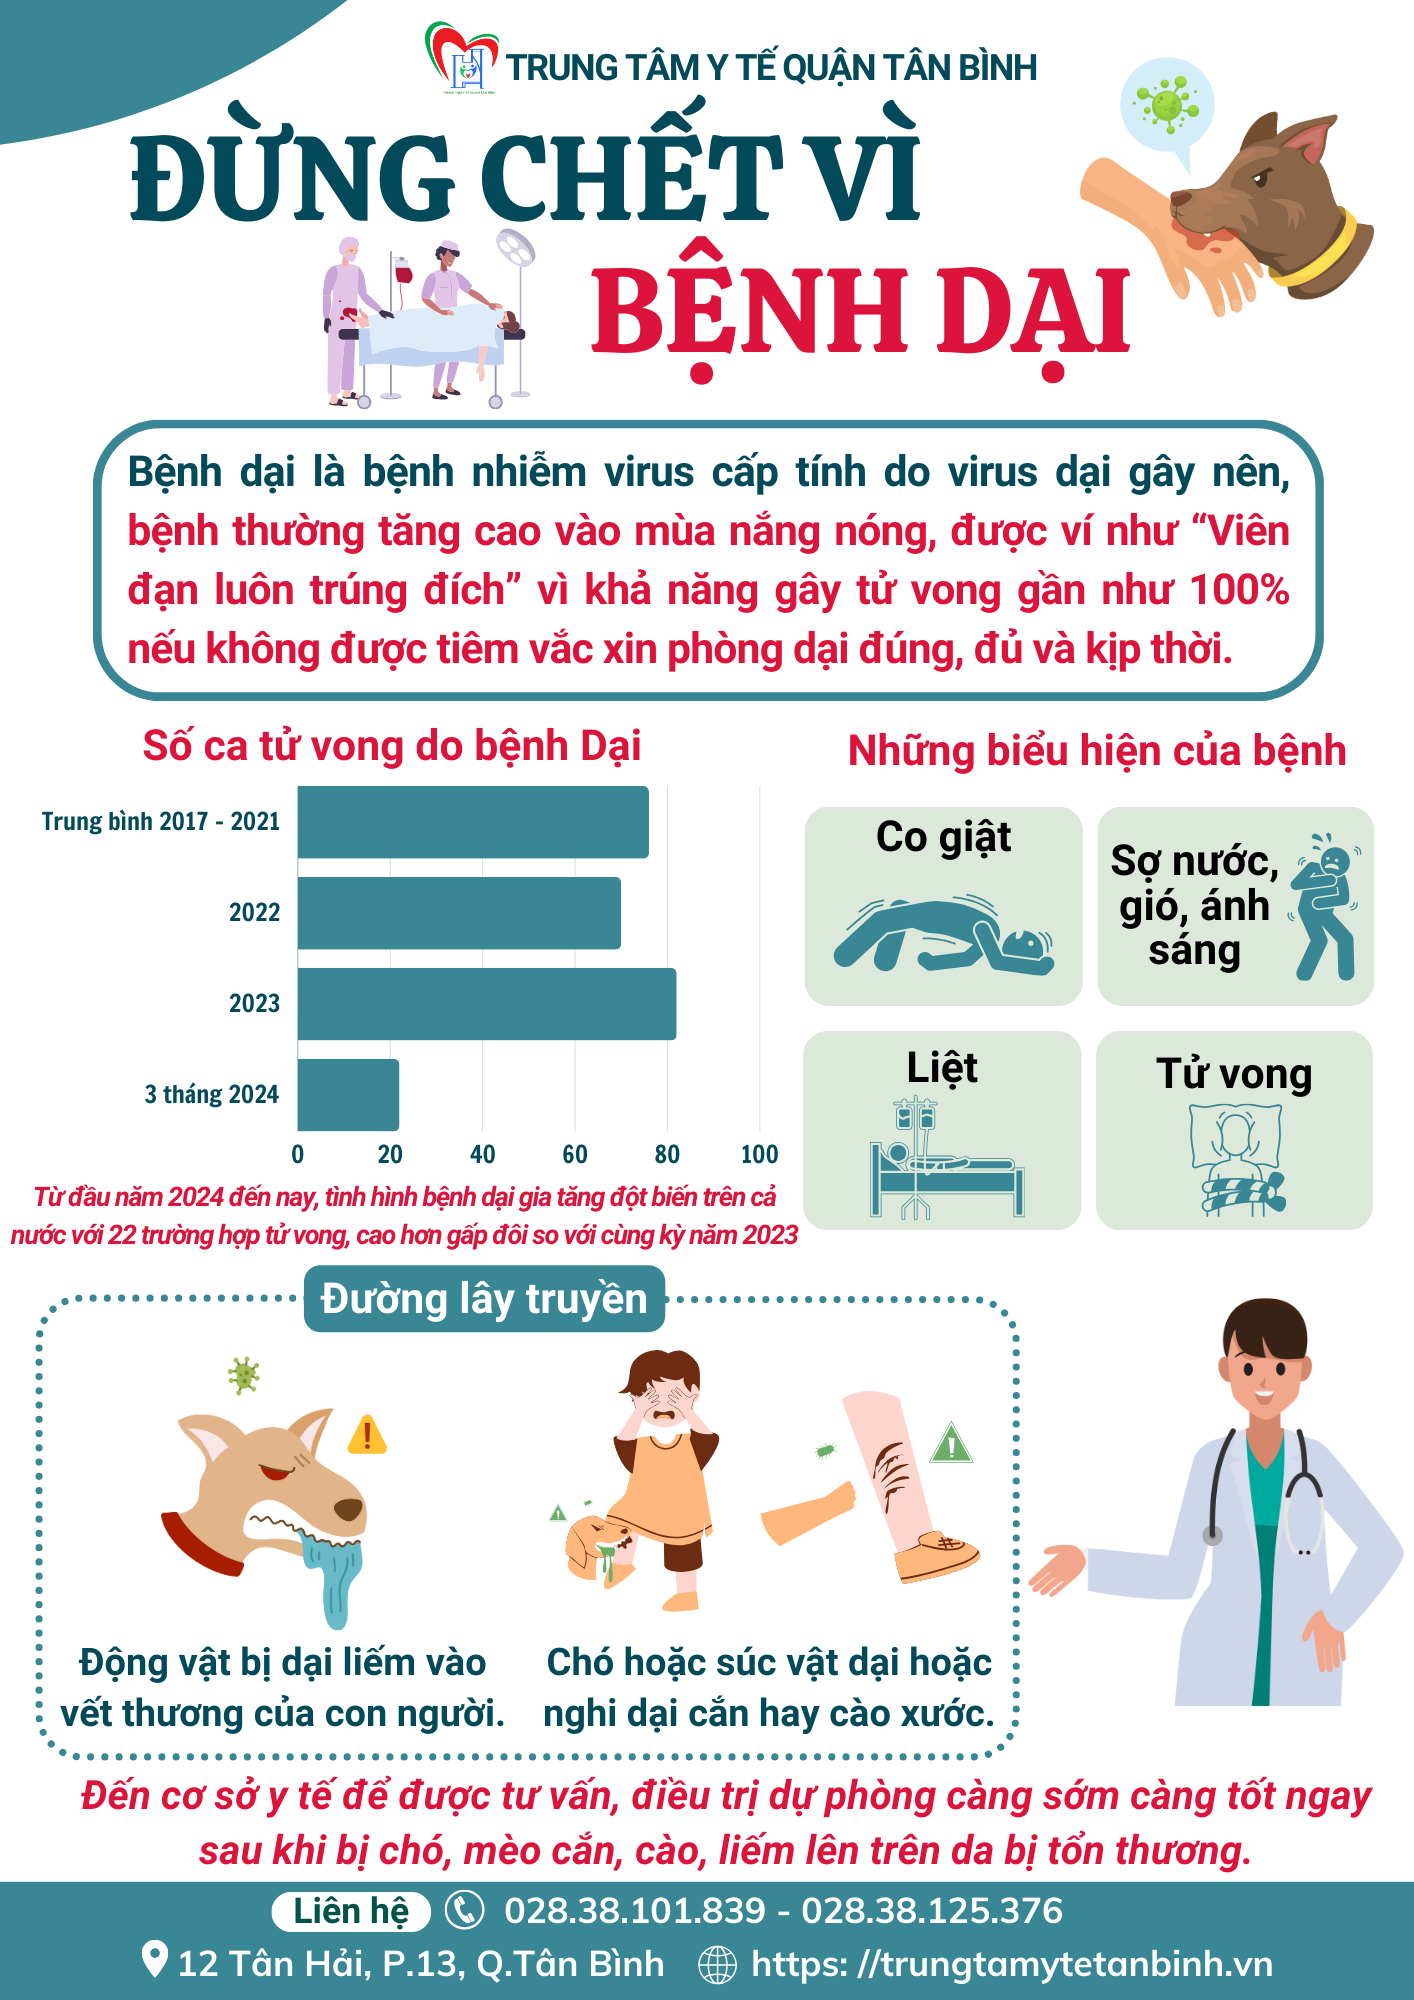 [Infographic] Đừng chết vì bệnh dại